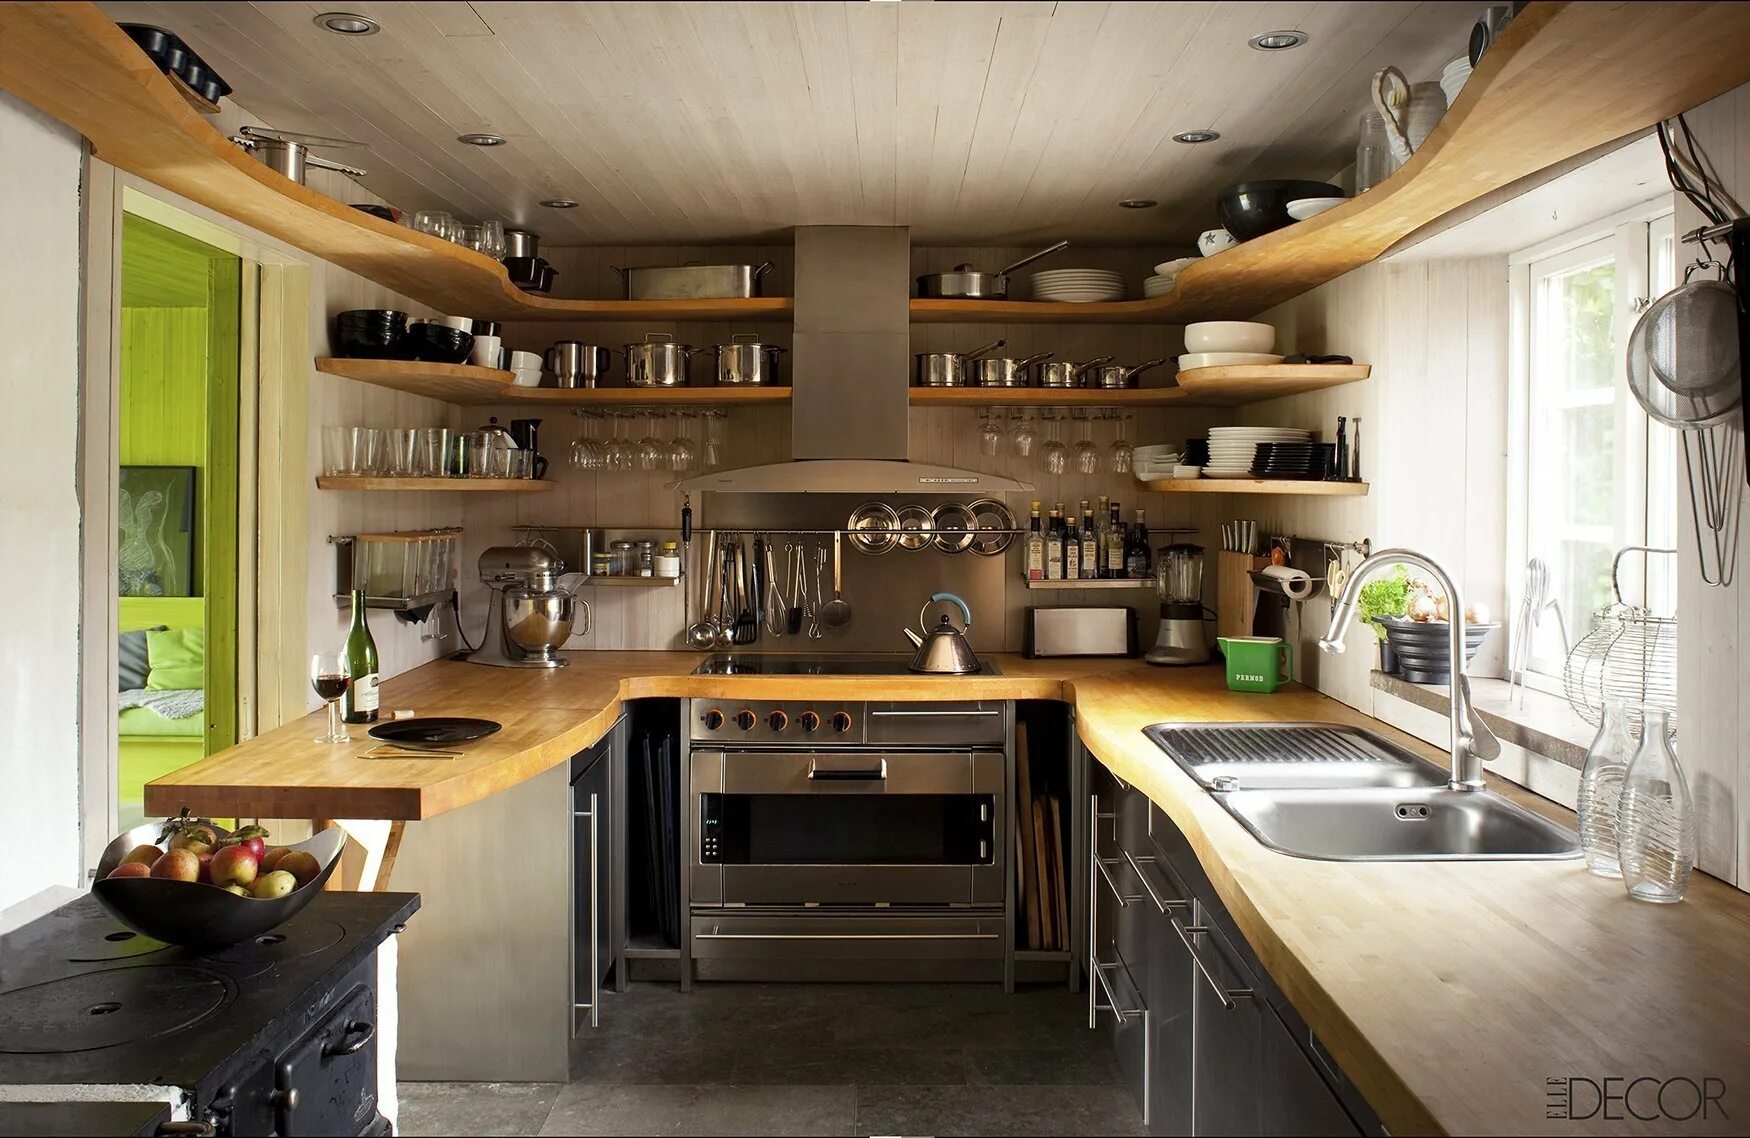 Необычные решения для кухни. Интересные идеи для кухни. Необычные маленькие кухни. Интерьер небольшой кухни в частном доме.